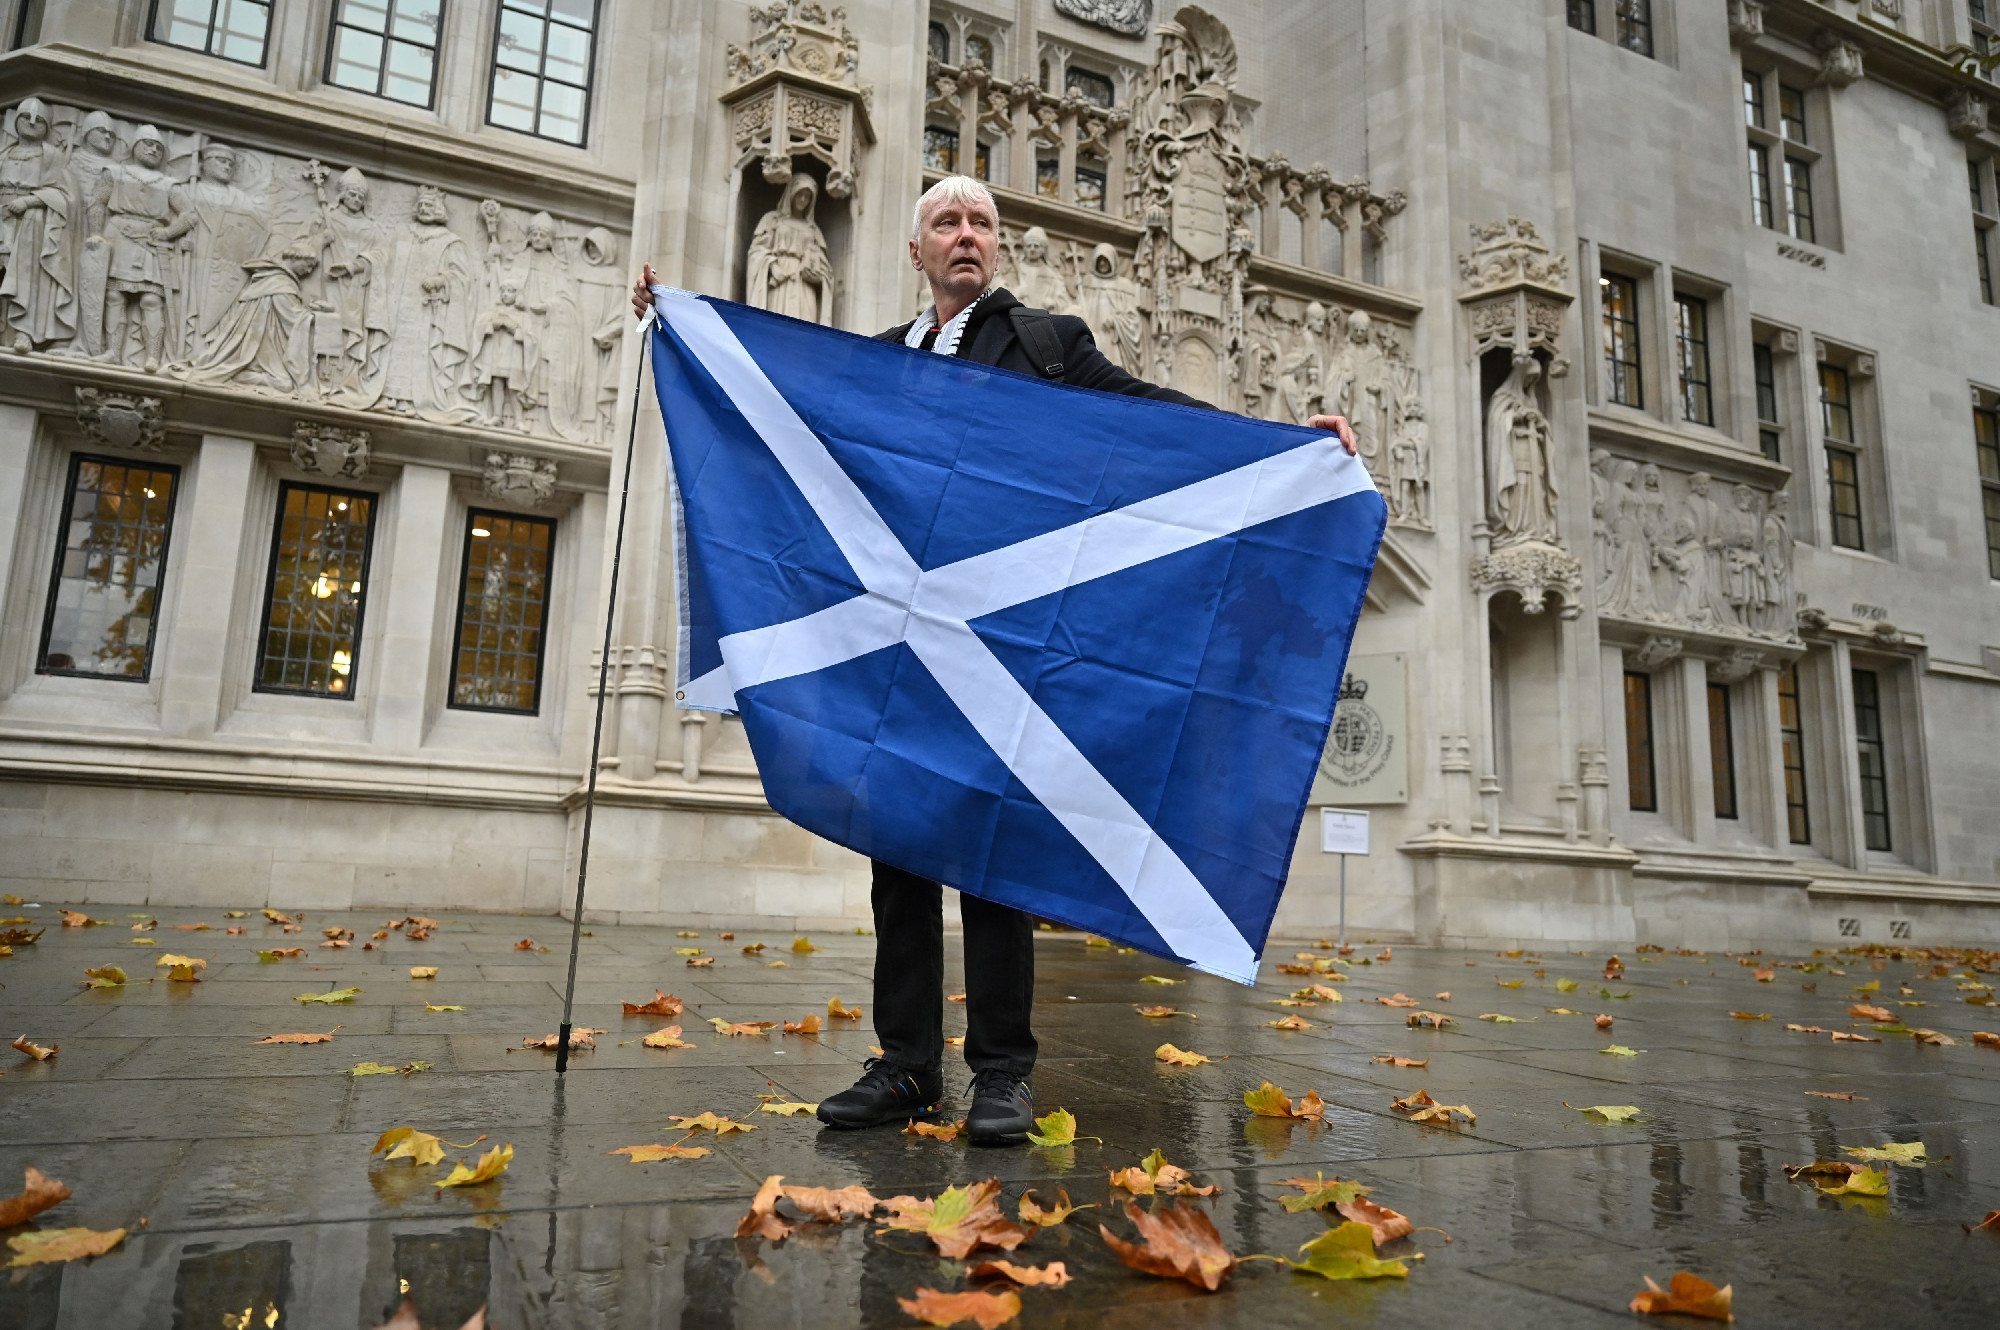 Ha törik, ha szakad: Skócia kiválna az Egyesült Királyságból